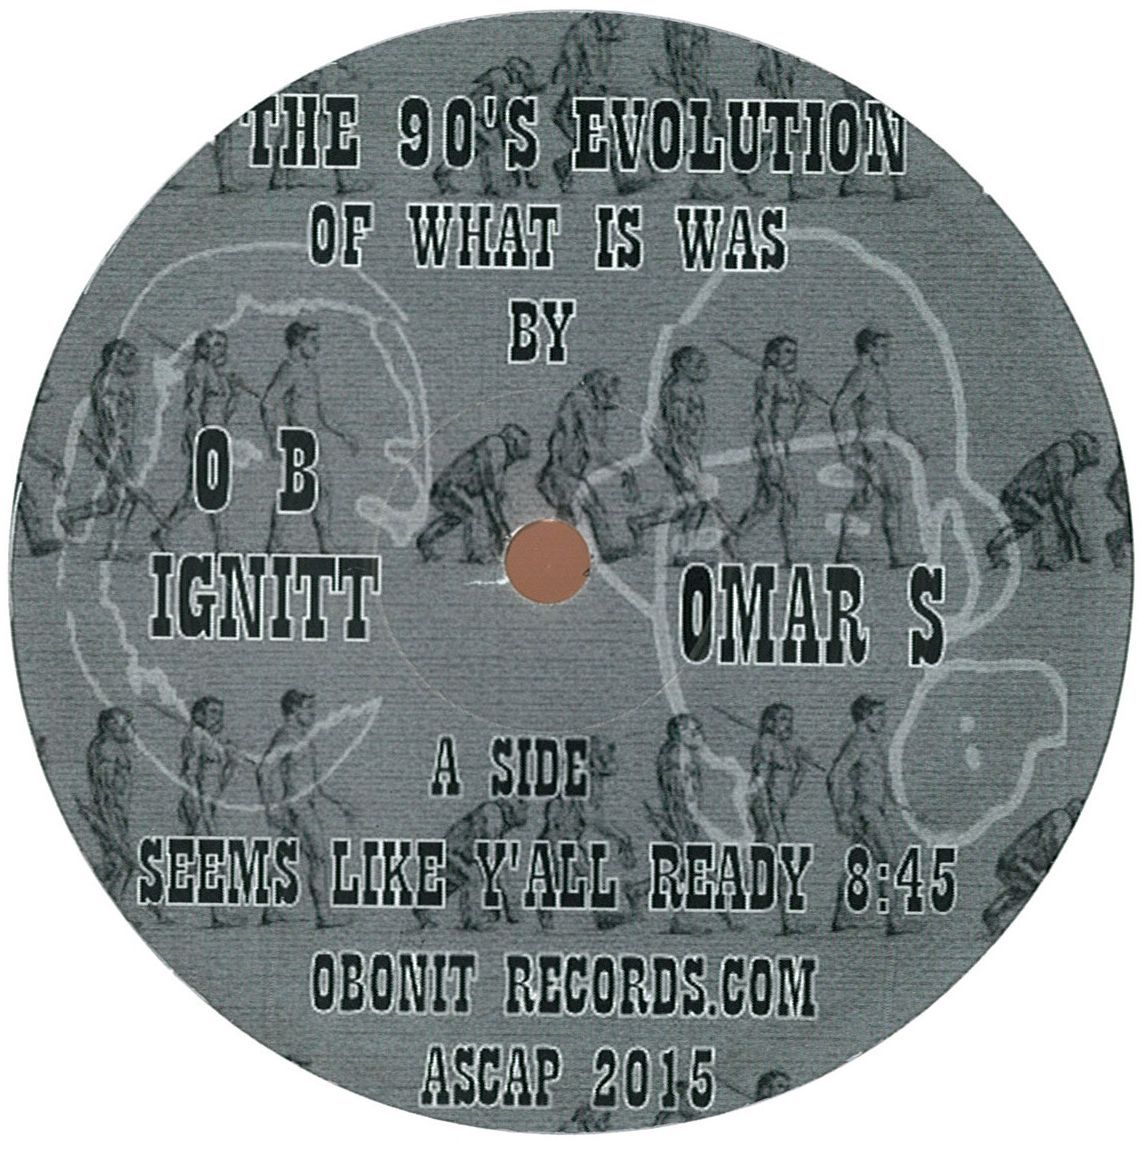 OB Ignitt & Omar S - The 90's Evolution Of What It Was